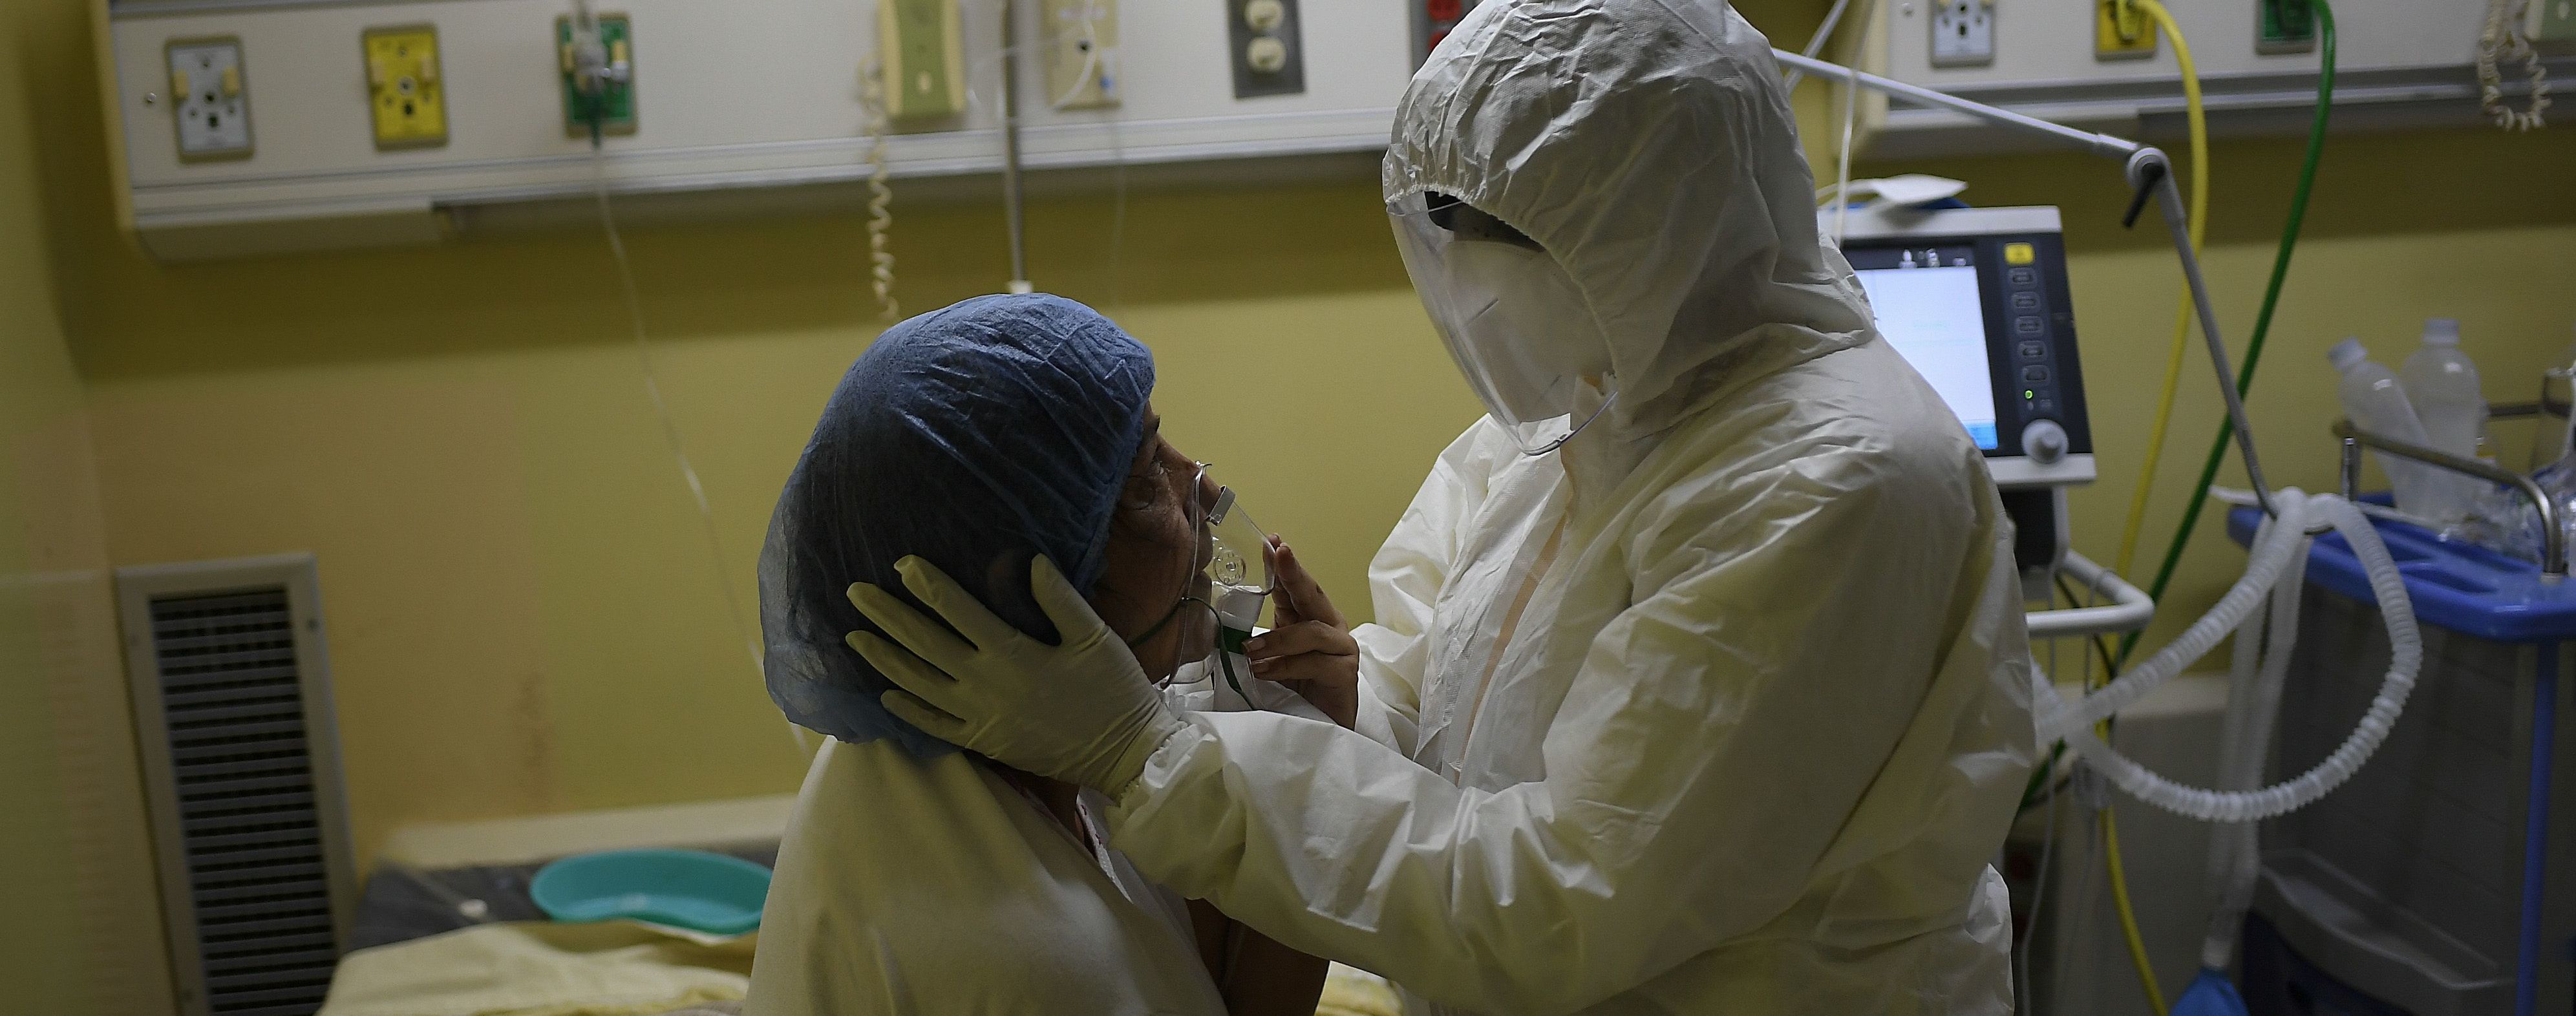 У Херсонській обласній лікарні спалах коронавірусу: заклад закривають на карантин